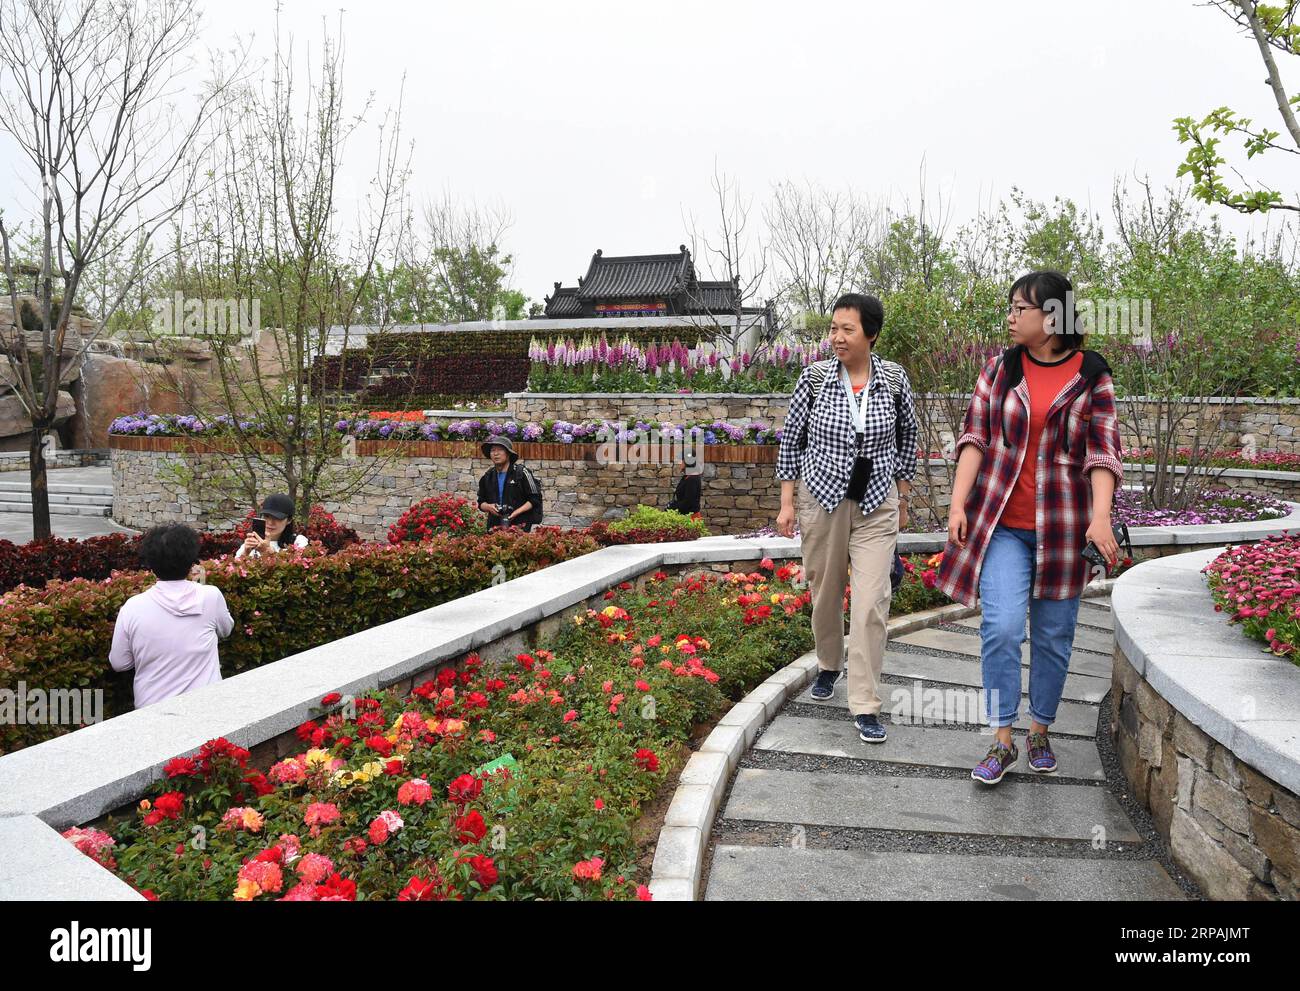 (190513) -- PECHINO, 13 maggio 2019 (Xinhua) -- i visitatori visitano lo Shanxi Garden alla Beijing International Horticultural Exhibition nel distretto Yanqing di Pechino, capitale della Cina, 12 maggio 2019. L'evento a tema dello Shanxi Day, che si è tenuto nell'ambito della mostra internazionale di orticoltura di Pechino, ha avuto inizio a Pechino il 12 maggio. Lo Shanxi Garden mette in mostra il suo impegno nell'ecologia e nel rimboschimento, nonché il suo concetto di sviluppo verde all'expo in corso. Non facendo più affidamento principalmente sulla sua industria carboniera per la crescita, Shanxi si è impegnata a sviluppare energia pulita e altre industrie emergenti Foto Stock